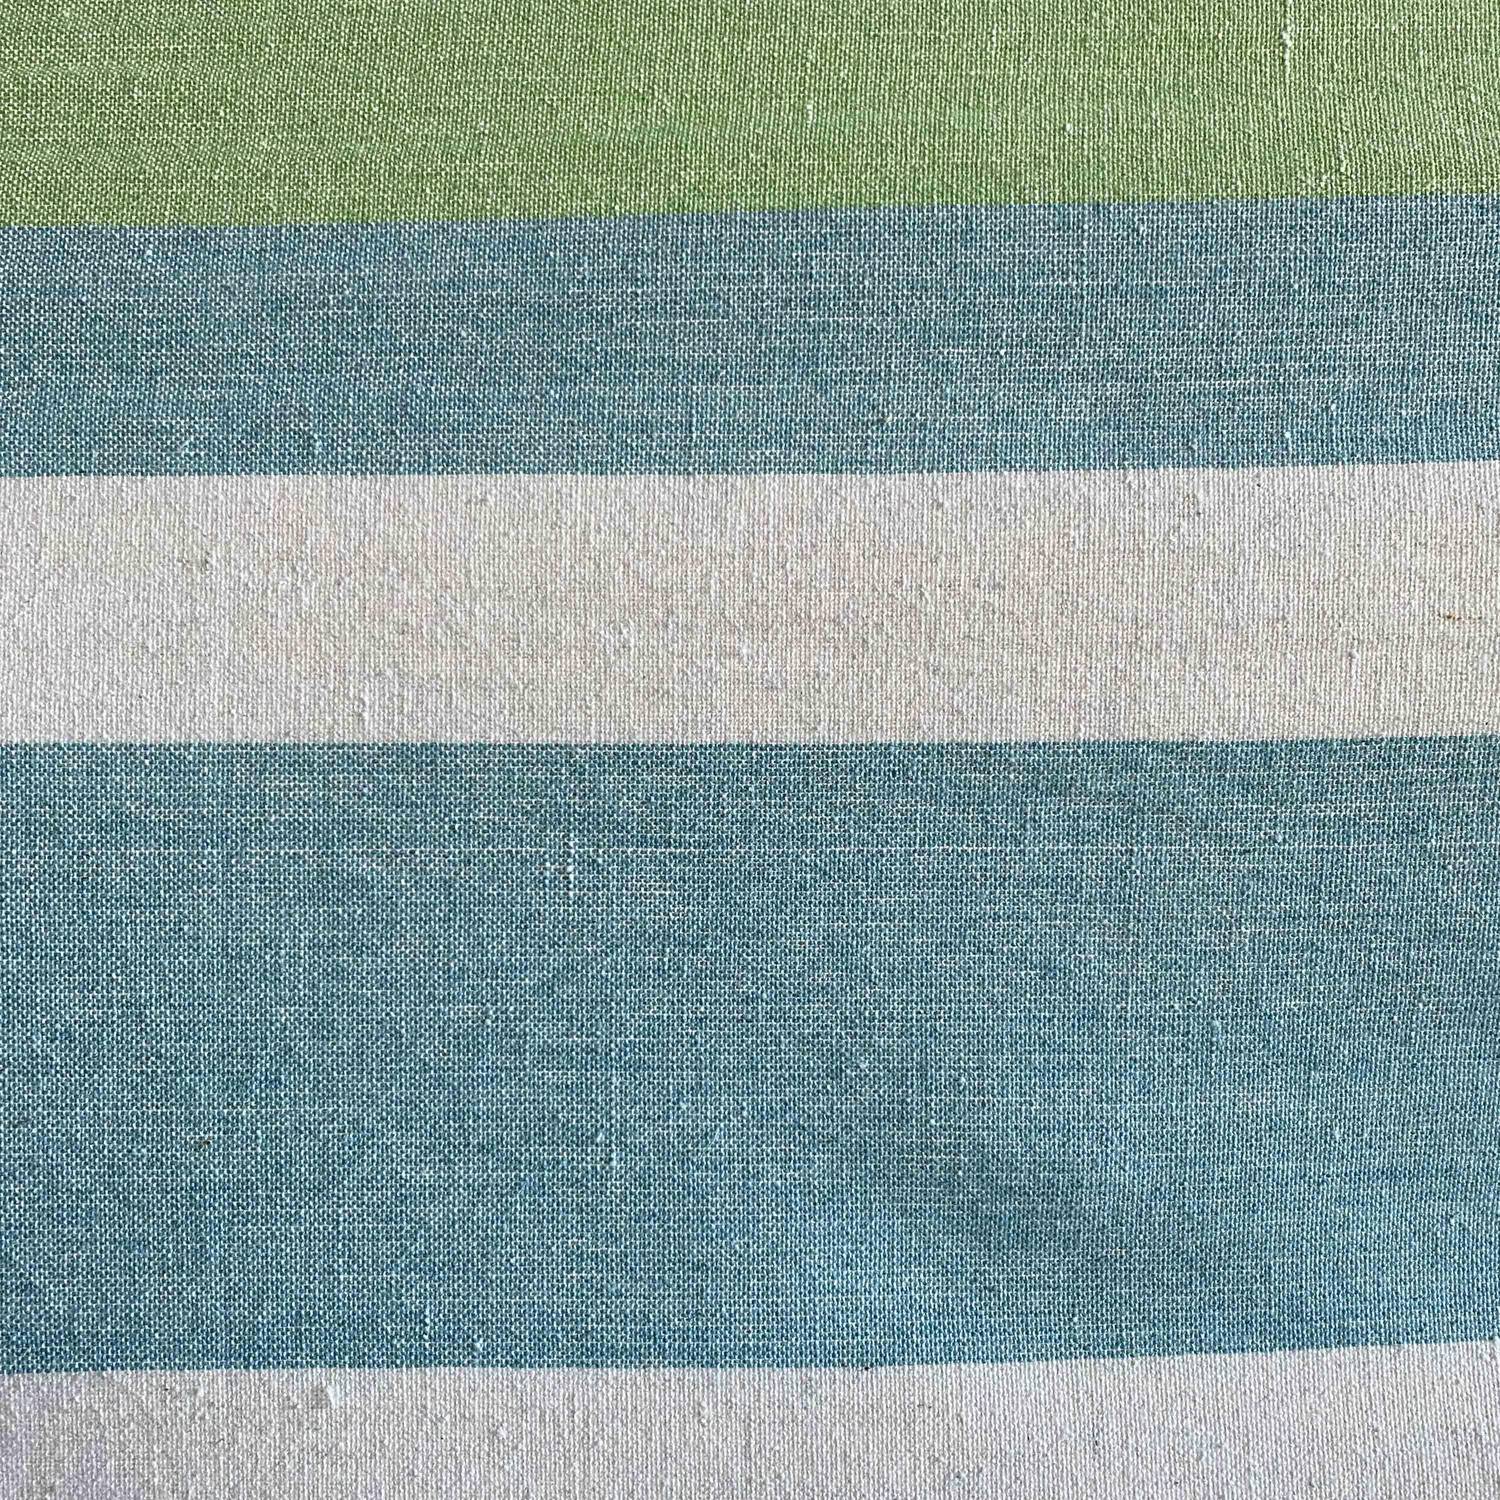 Toile de hamac 1 personne, 100% coton, 110x220cm, rayée bleu et vert, avec cordes d'accroche et mousquetons Photo2